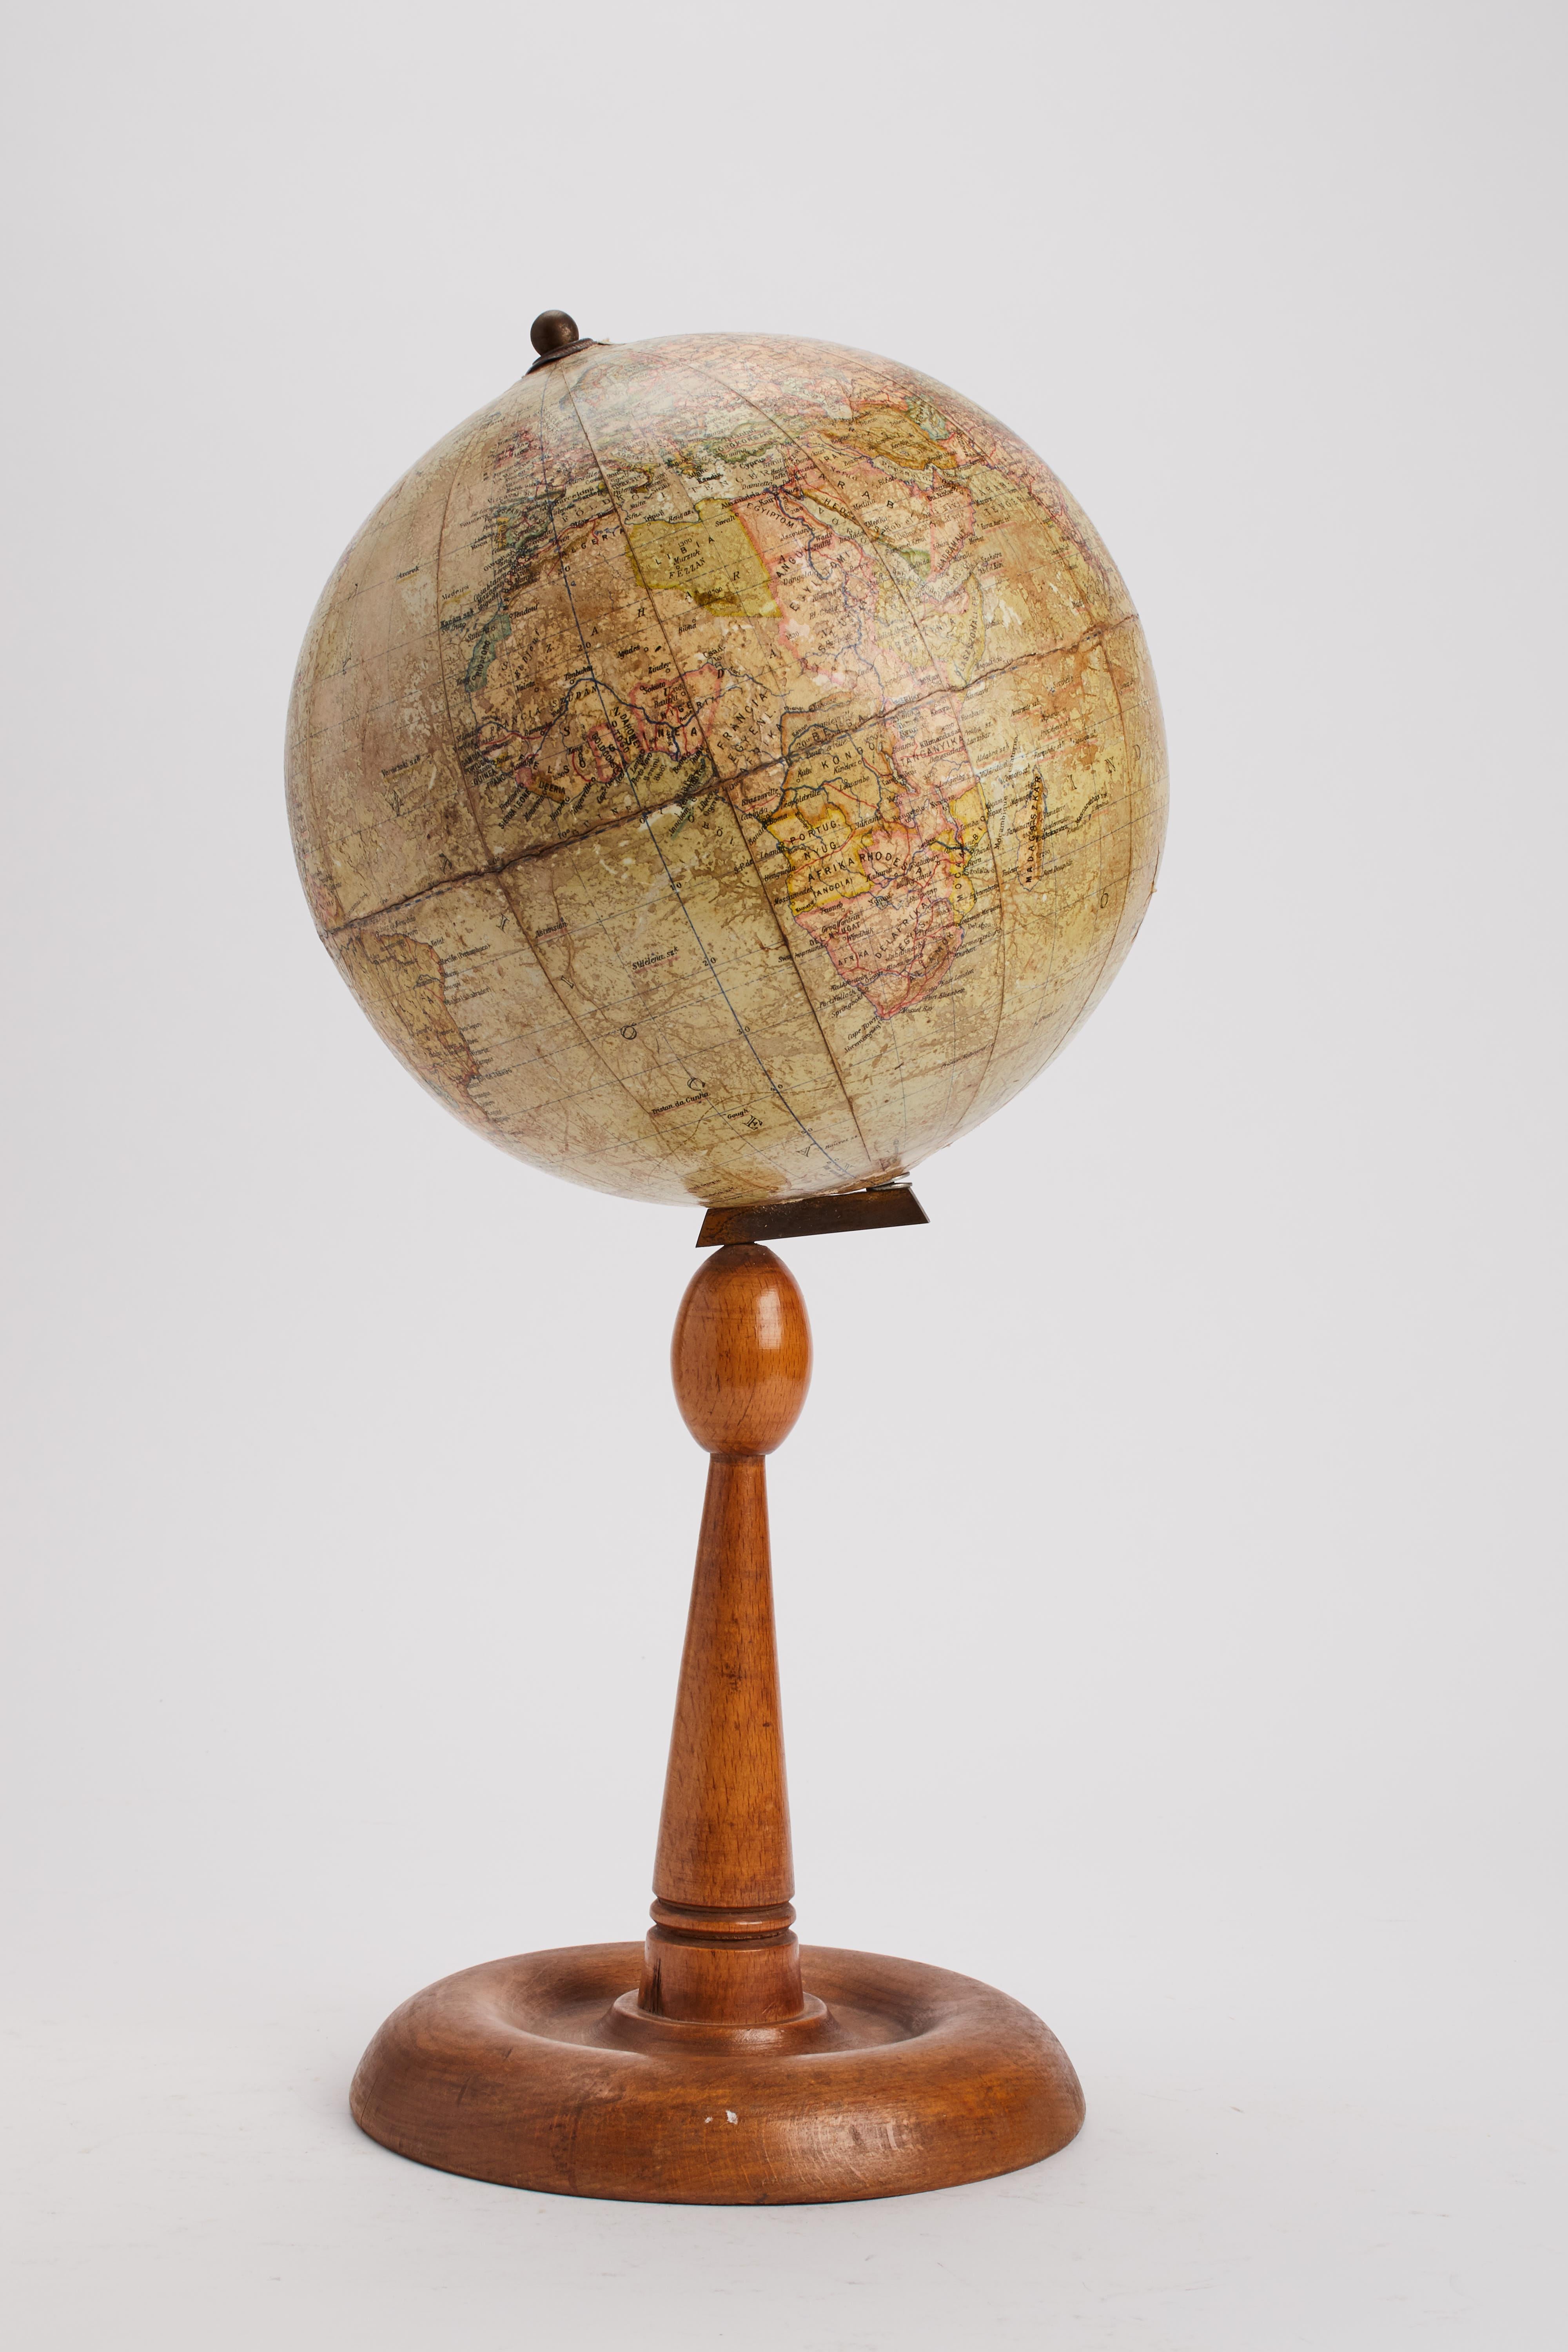 Globe terrestre de taille moyenne en papier mâché sur une base en bois d'érable tourné. Le globe est incliné et relié à la base par un support métallique. Publié par Földgömb. Budapest, Hongrie, vers 1920.